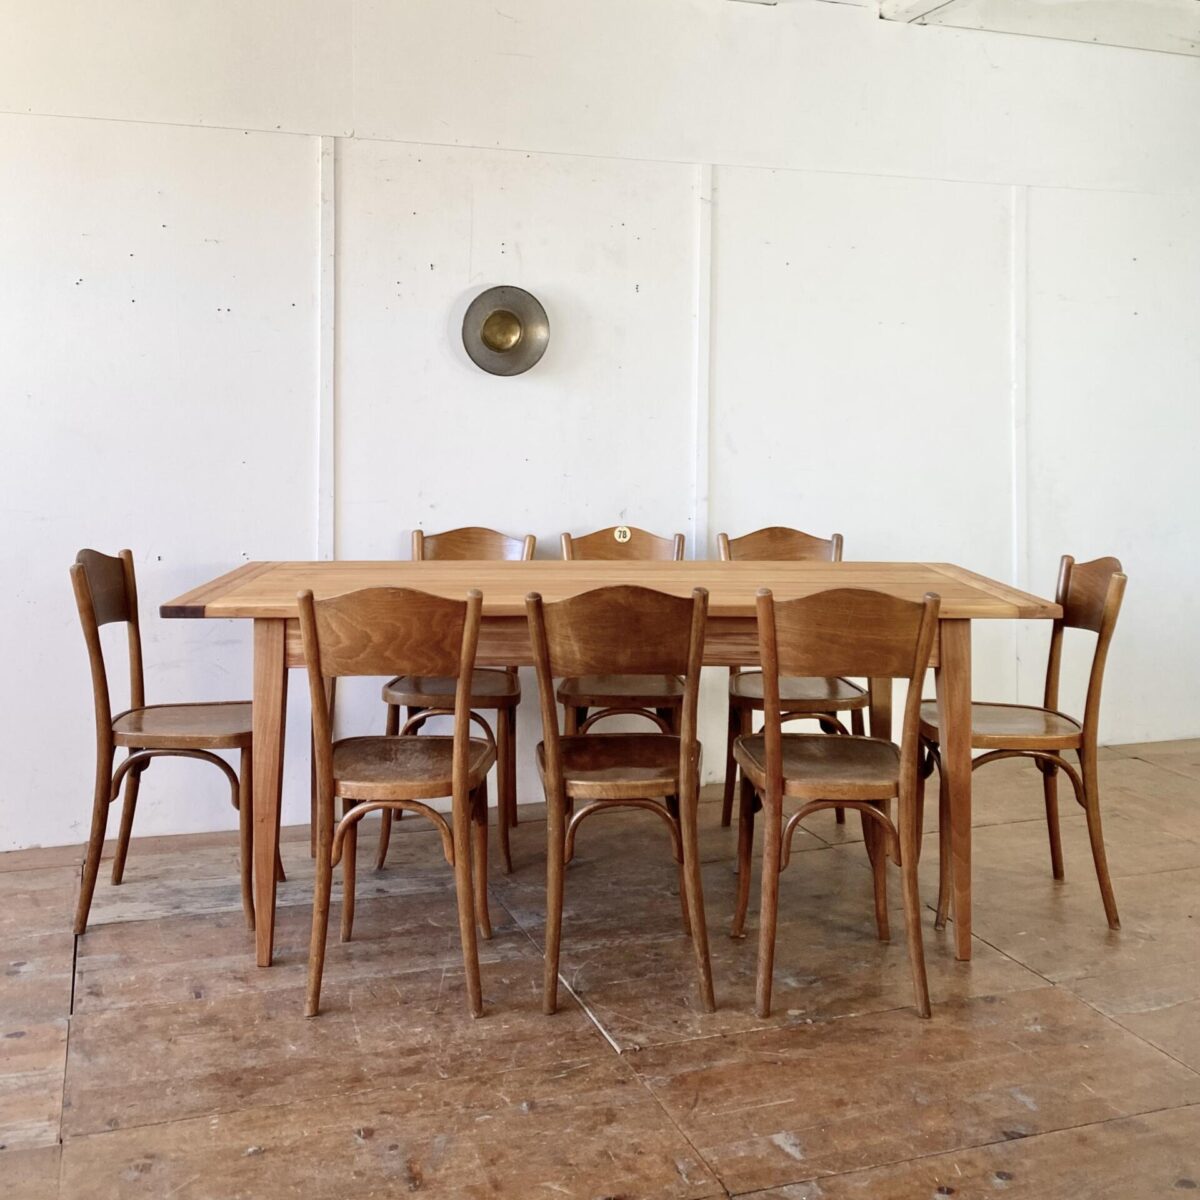 Alter Tannenholz Esstisch. 200x90cm Höhe 78cm. Der Tisch ist in stabilem, frisch aufbereiteten Zustand. Die Holz Oberflächen sind mit Naturöl behandelt. An dem Tisch finden bis zu 8 Personen Platz. 